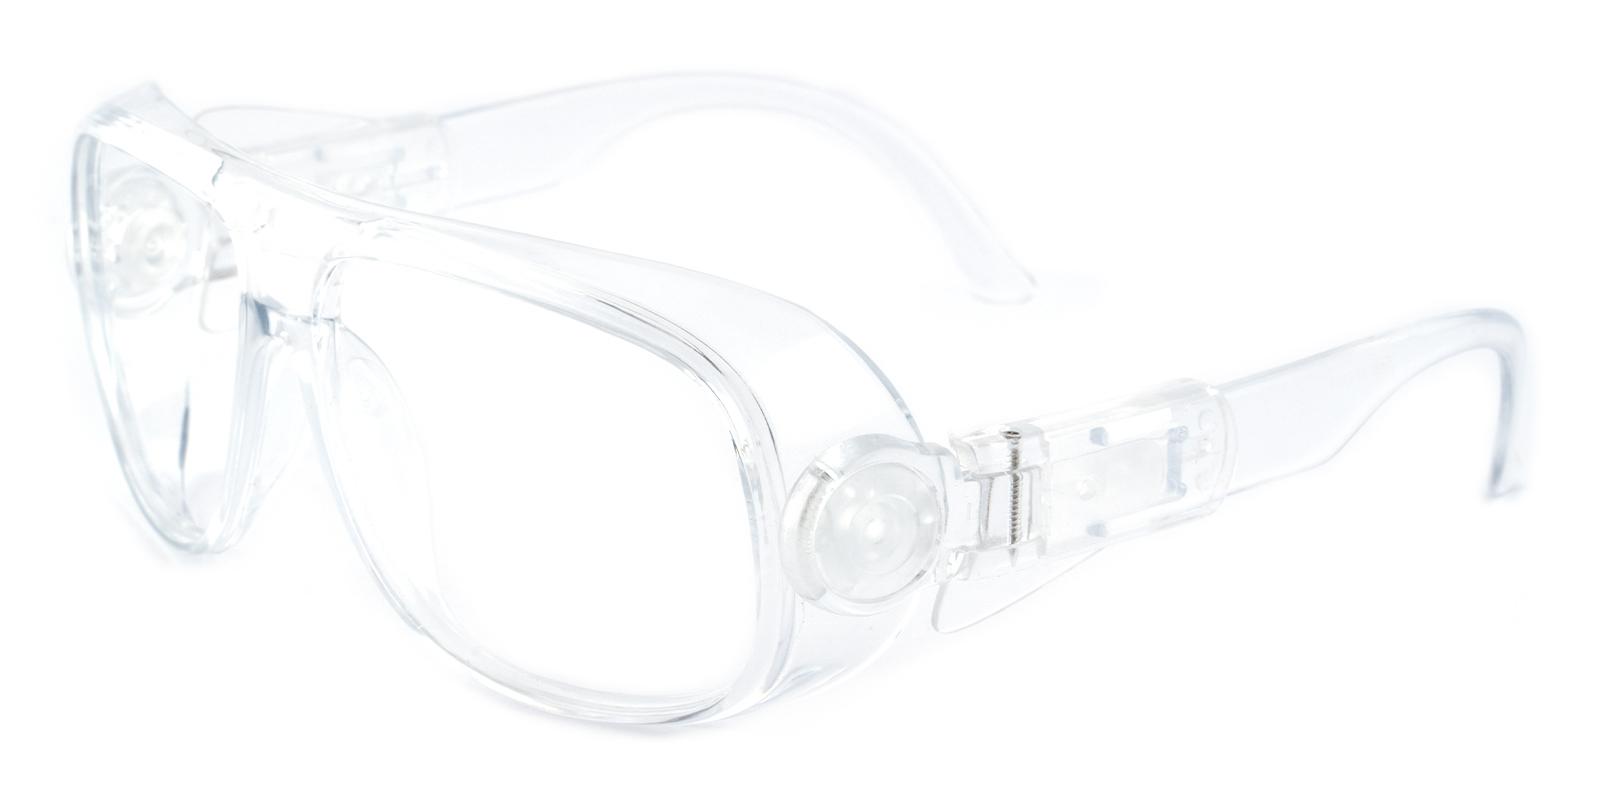 Natalie Translucent Plastic Eyeglasses , SportsGlasses , UniversalBridgeFit Frames from ABBE Glasses